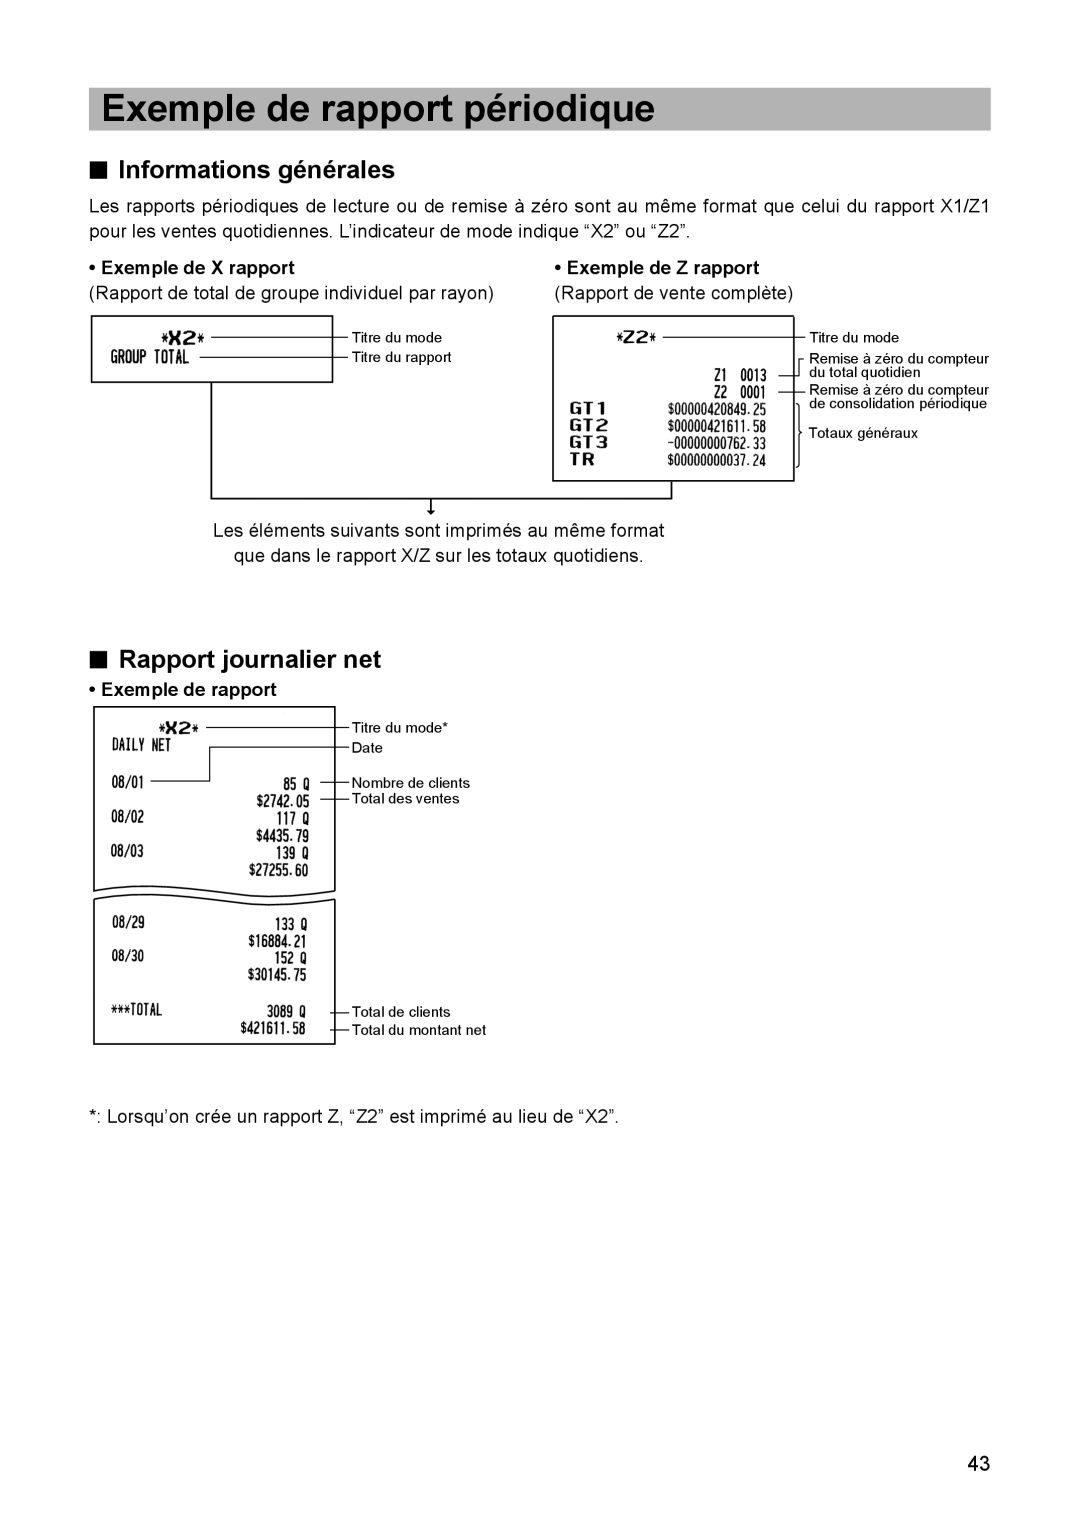 Sharp ER-A347A instruction manual Exemple de rapport périodique, Informations générales, Rapport journalier net 